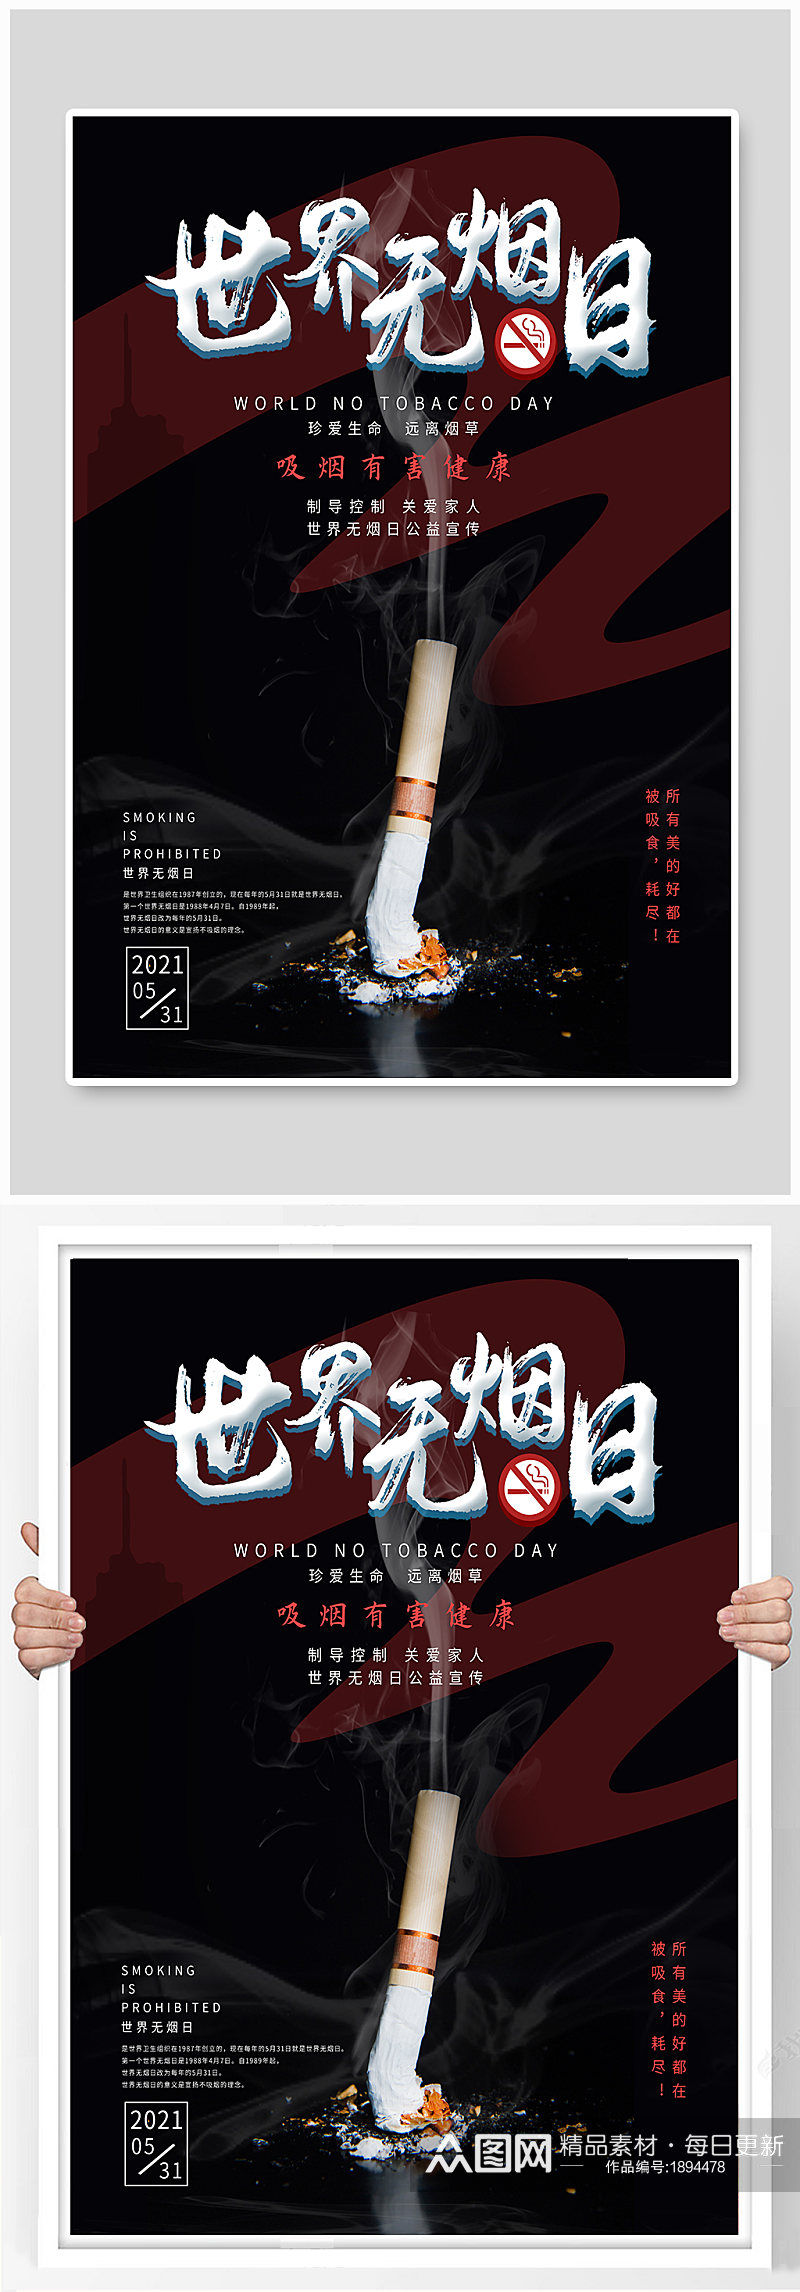 531世界无烟日公益宣传海报素材